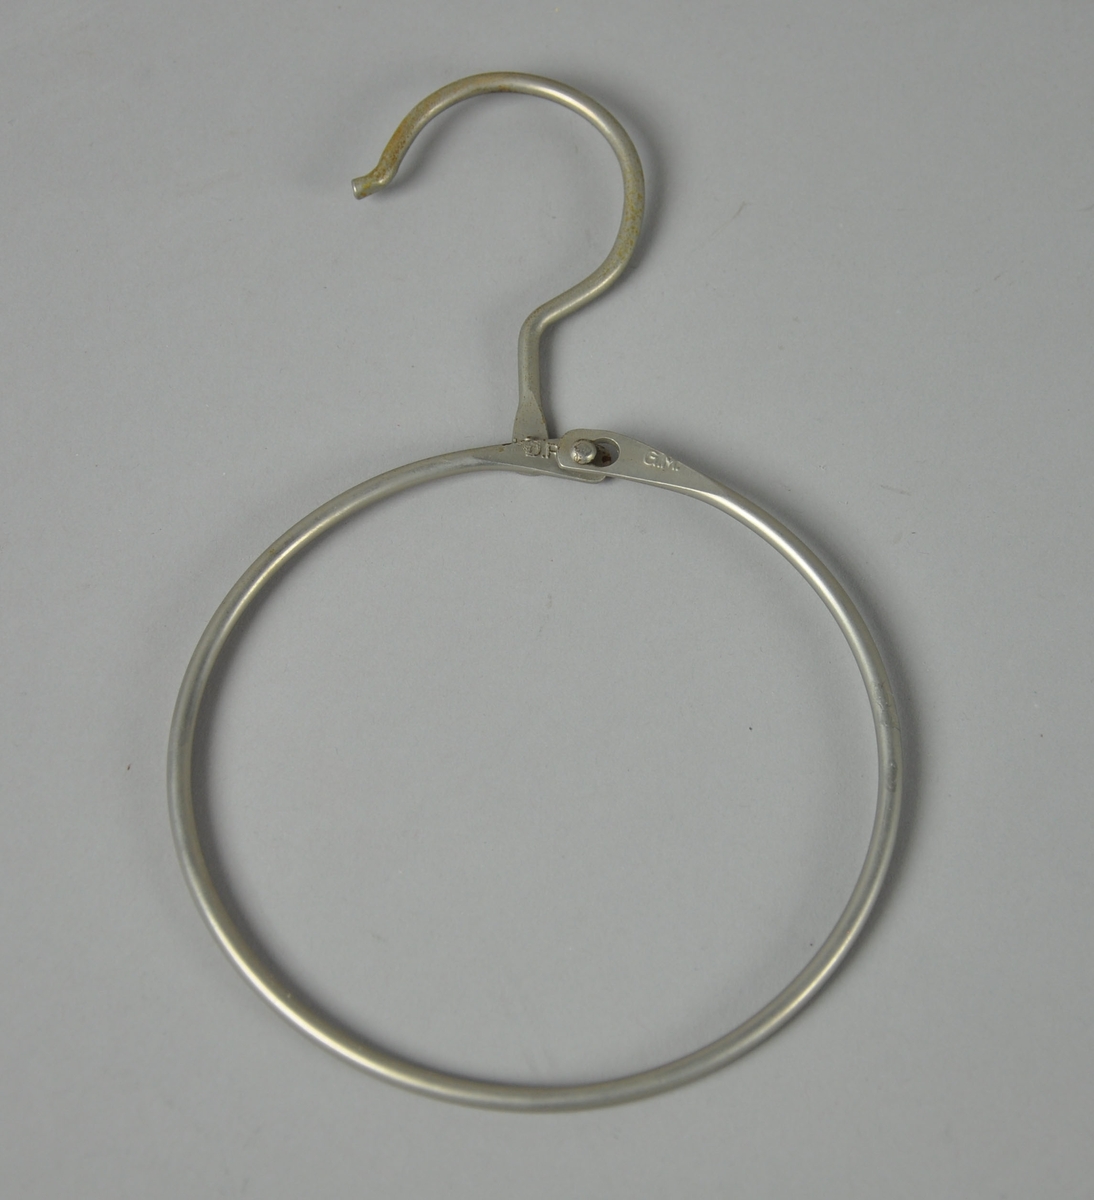 Opphengsring for oppheng av skinn. Består av sirkulær ring som kan åpnes. På toppen er det en krok for oppheng, ligner på kleshenger-krok.